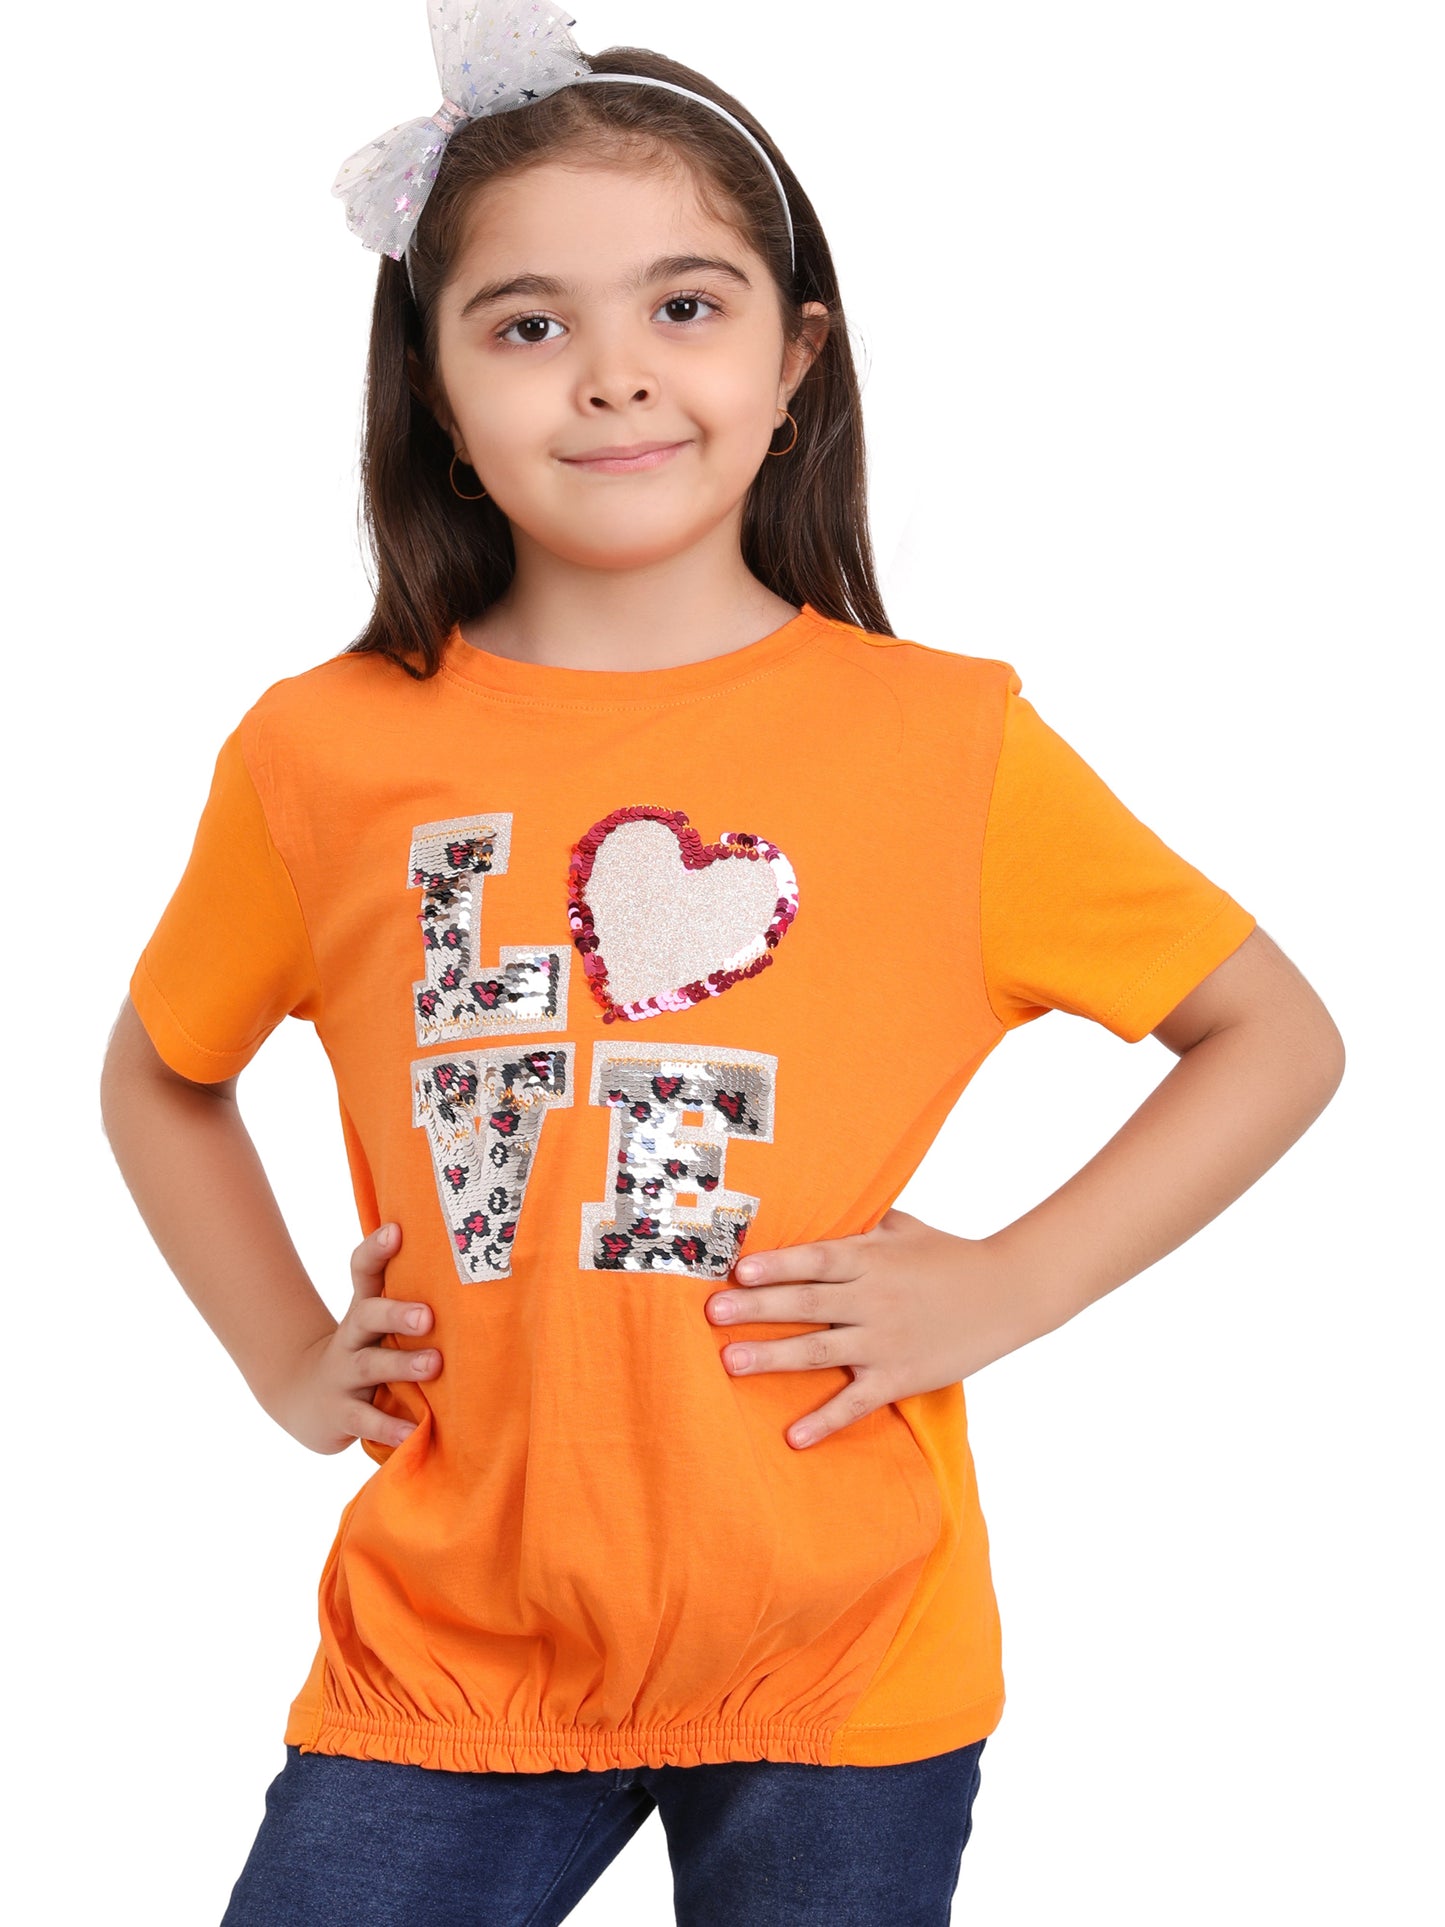 Lovely Girls T-Shirt - Orange